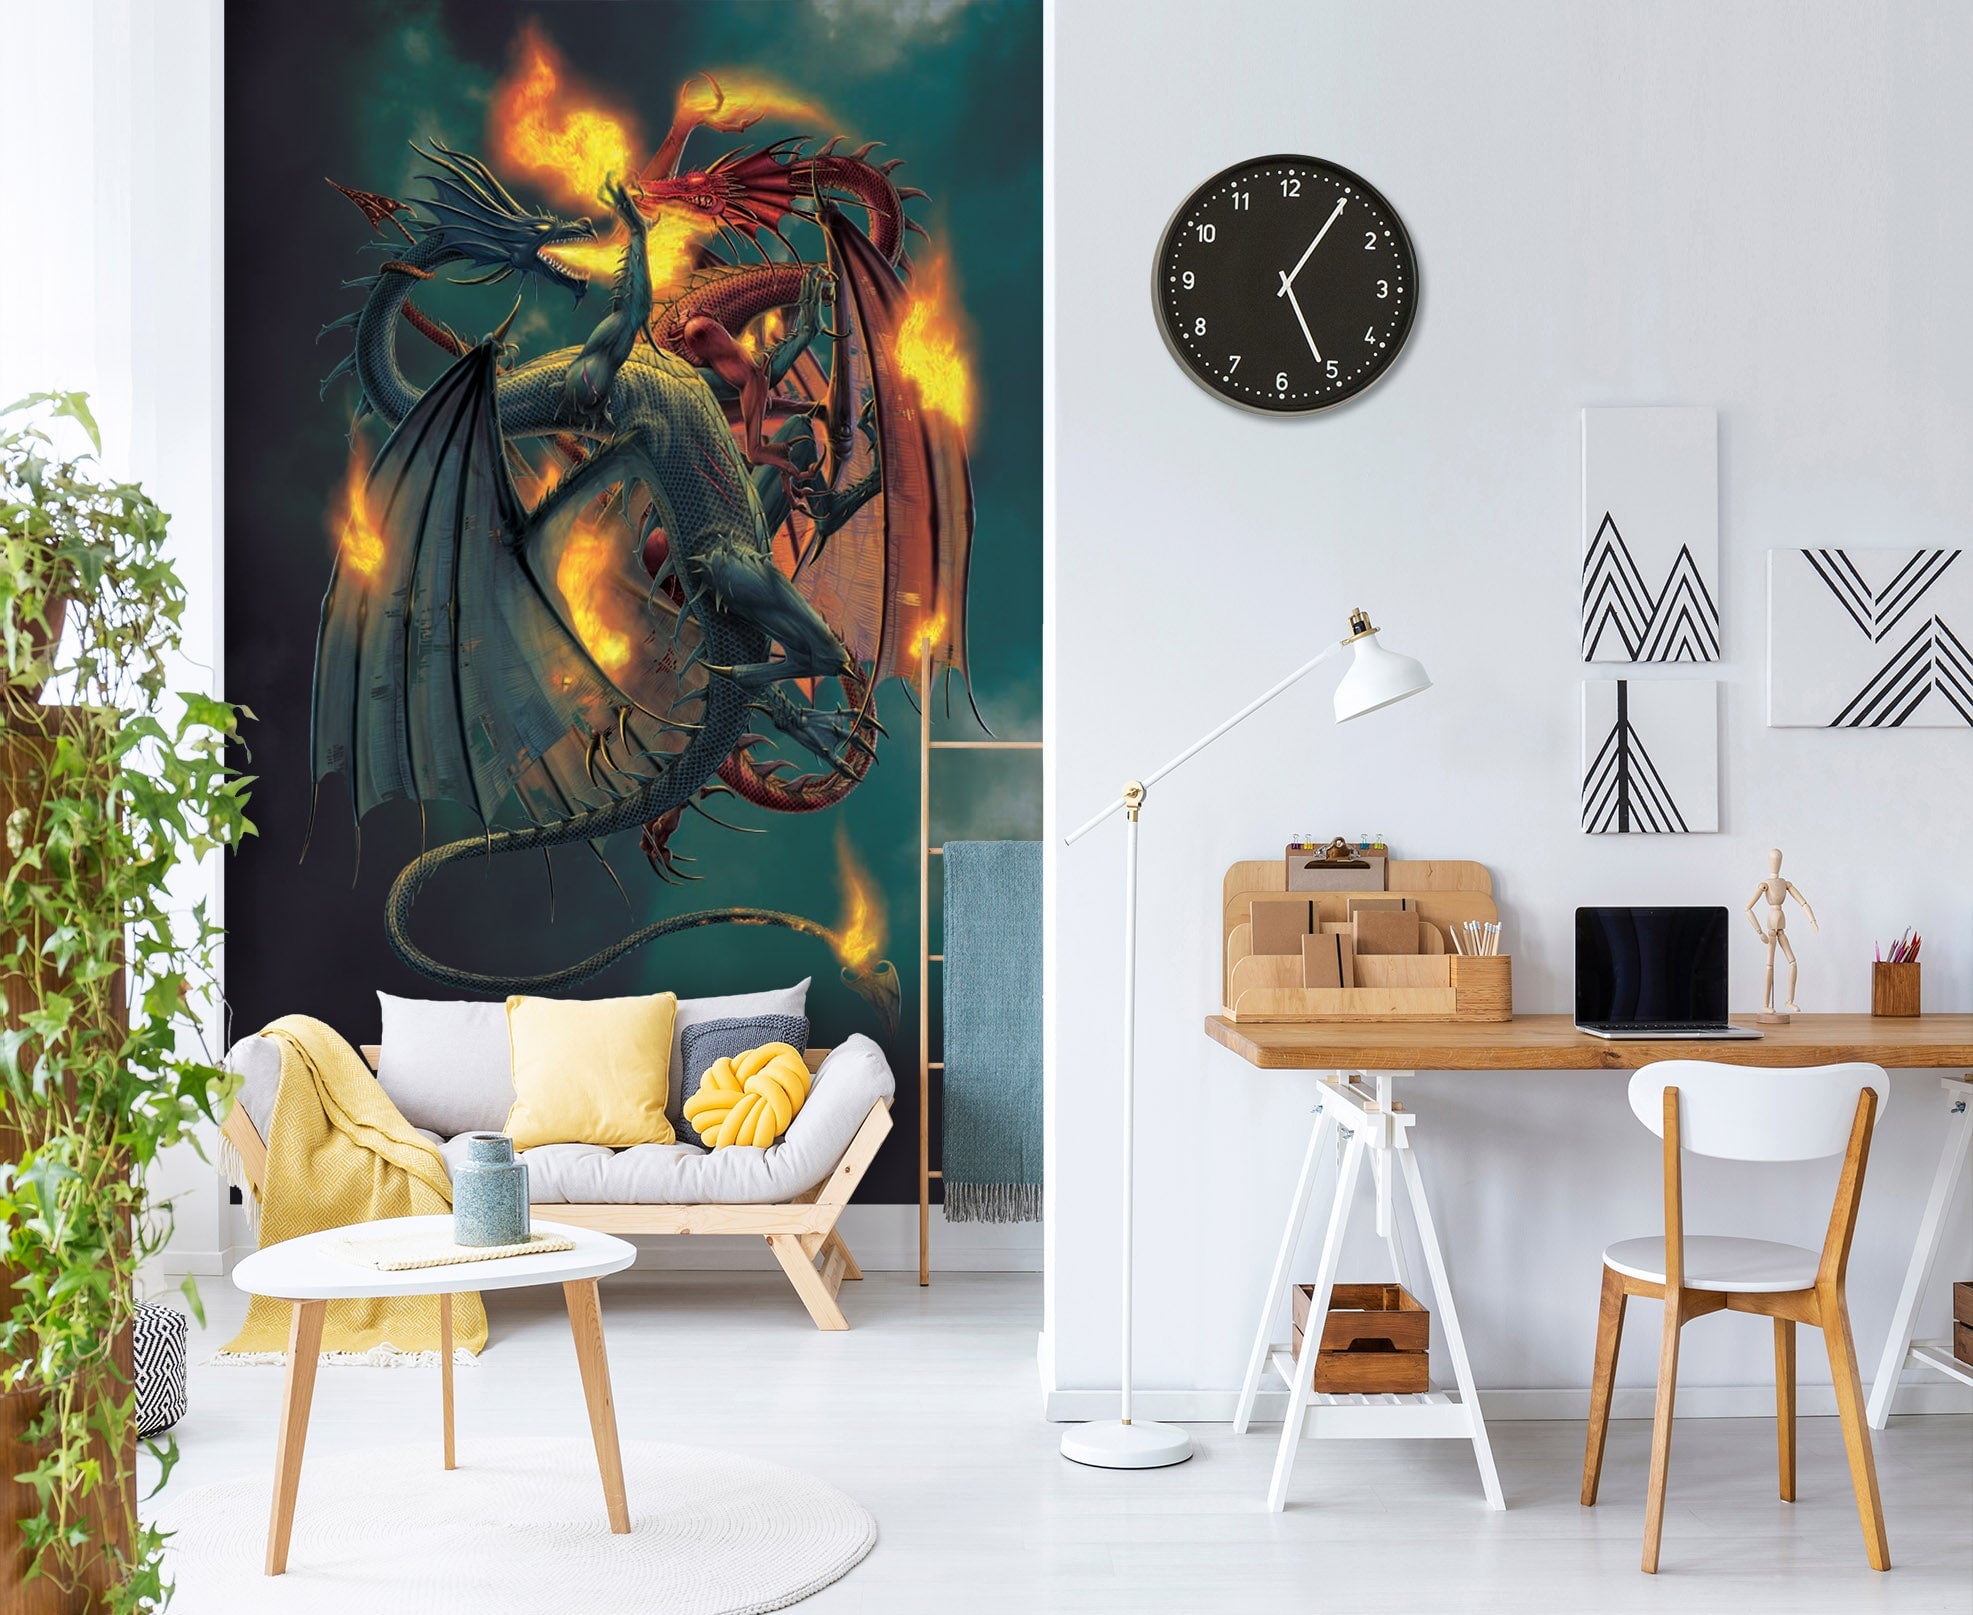 3D Fire Dragon 1422 Wall Murals Exclusive Designer Vincent Wallpaper AJ Wallpaper 